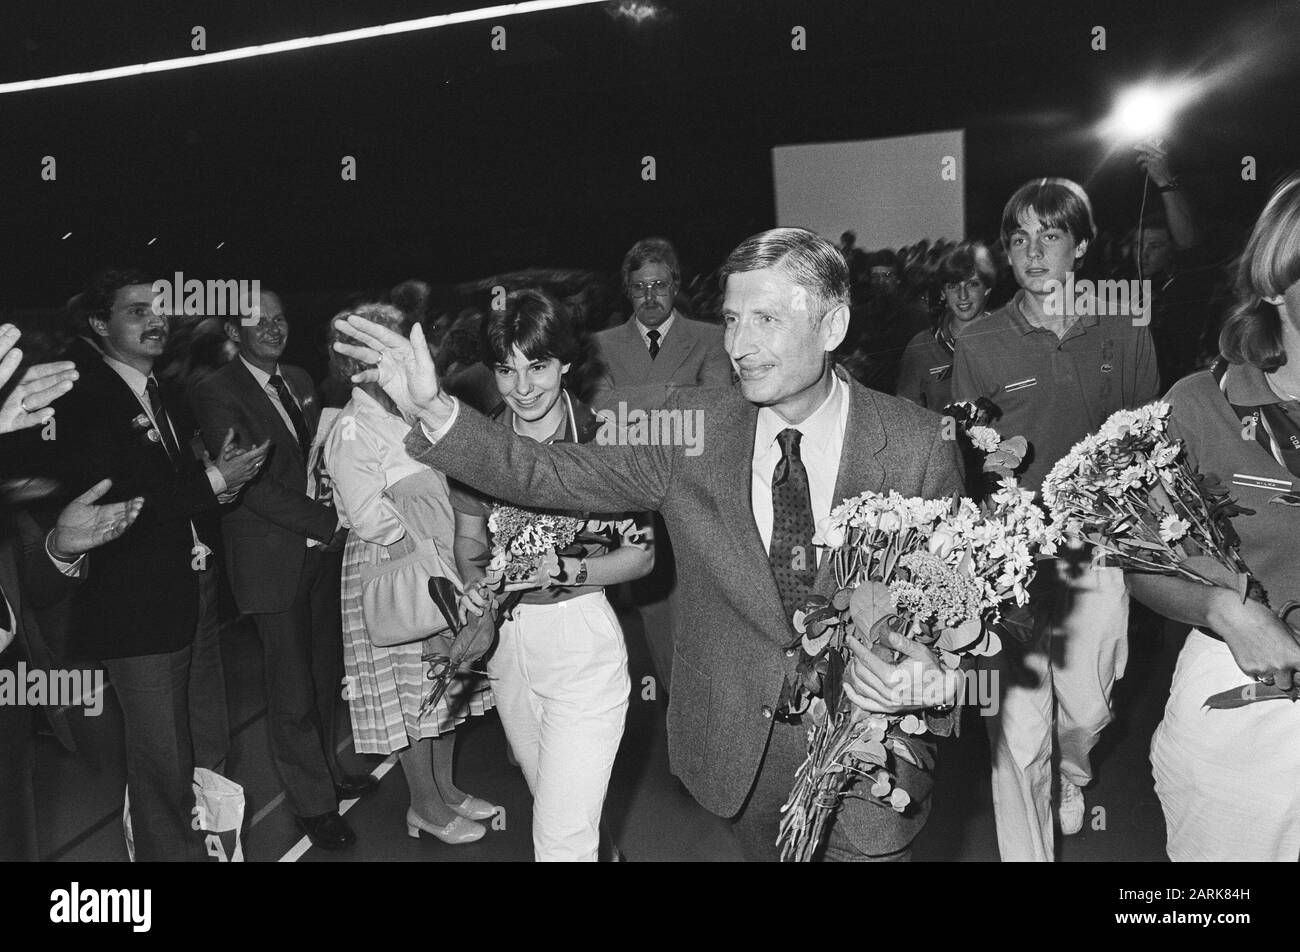 Réunion électorale CDA Nijmegen, affectation CDA; Van Agt waving with flowers Date: 6 septembre 1982 lieu: Nijmegen mots clés: Election meetings Nom de l'institution: CDA Banque D'Images